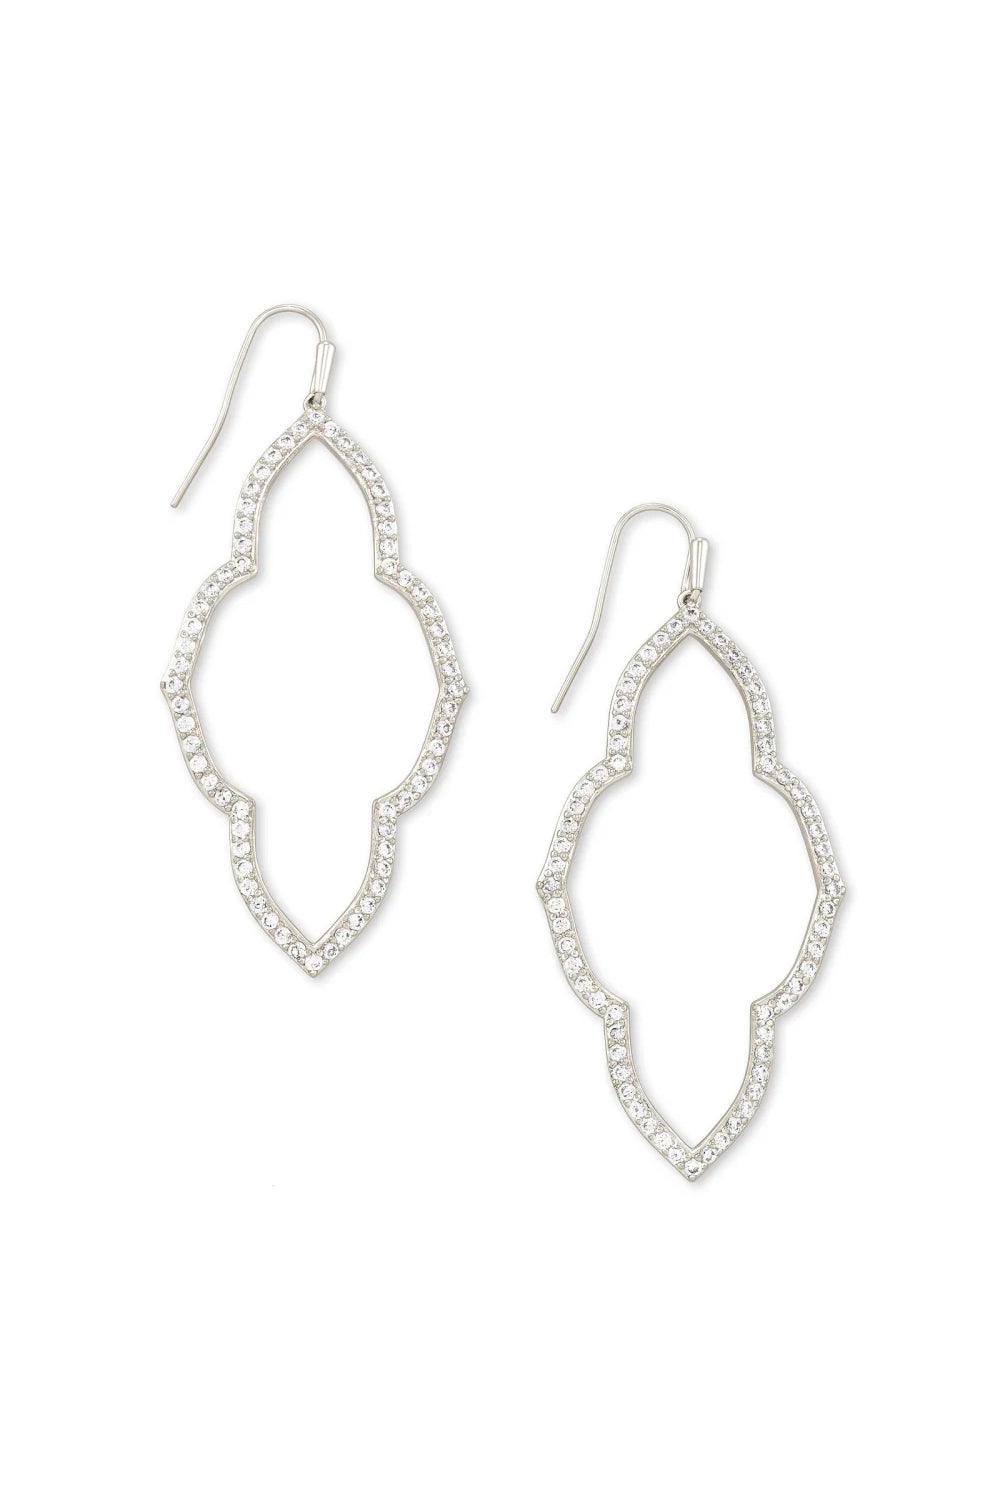 Kendra Scott: Abbie Silver Open Frame Earrings - White Crystal | Makk Fashions